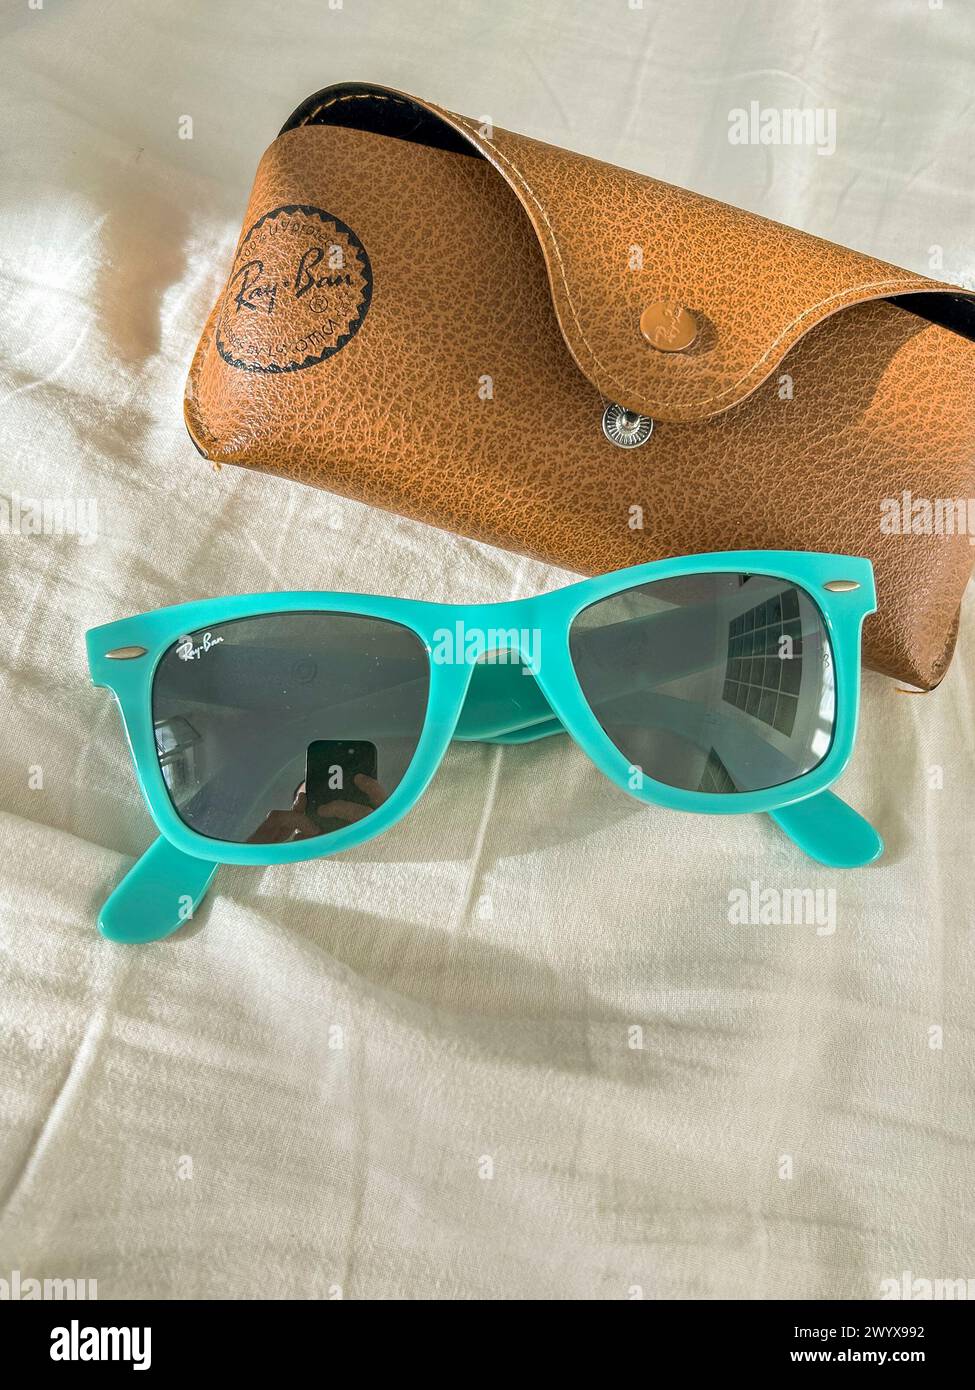 Ray Ban, Wayfarer, occhiali da sole, RB2140, turchese, accessori alla moda Foto Stock